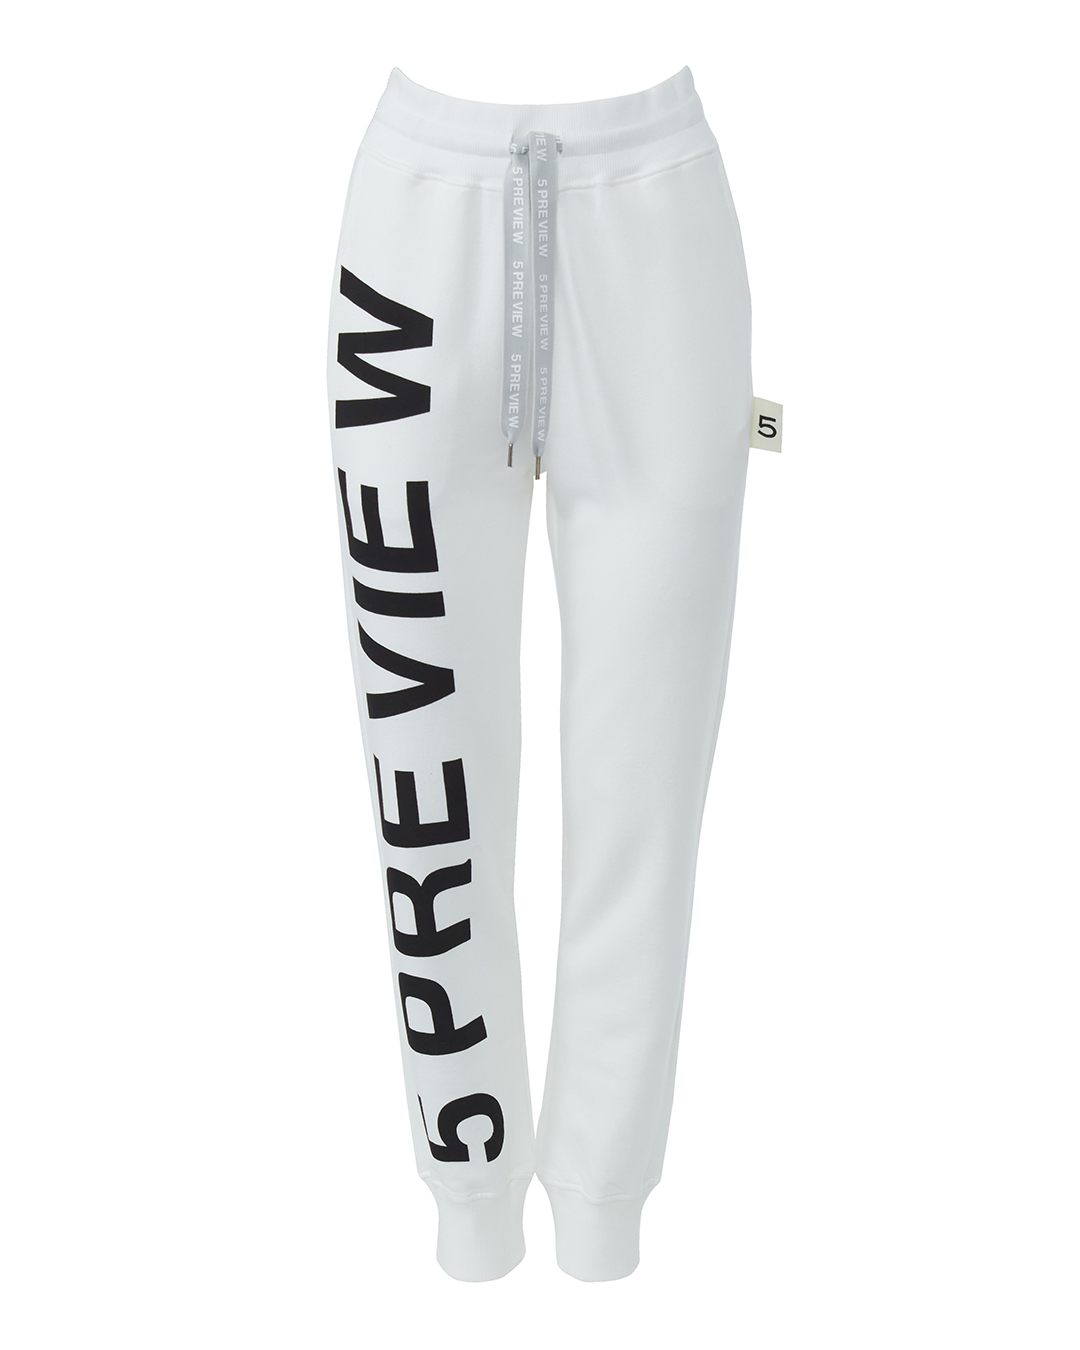 фото Спортивные брюки женские 5preview 5pw22070 белые xs